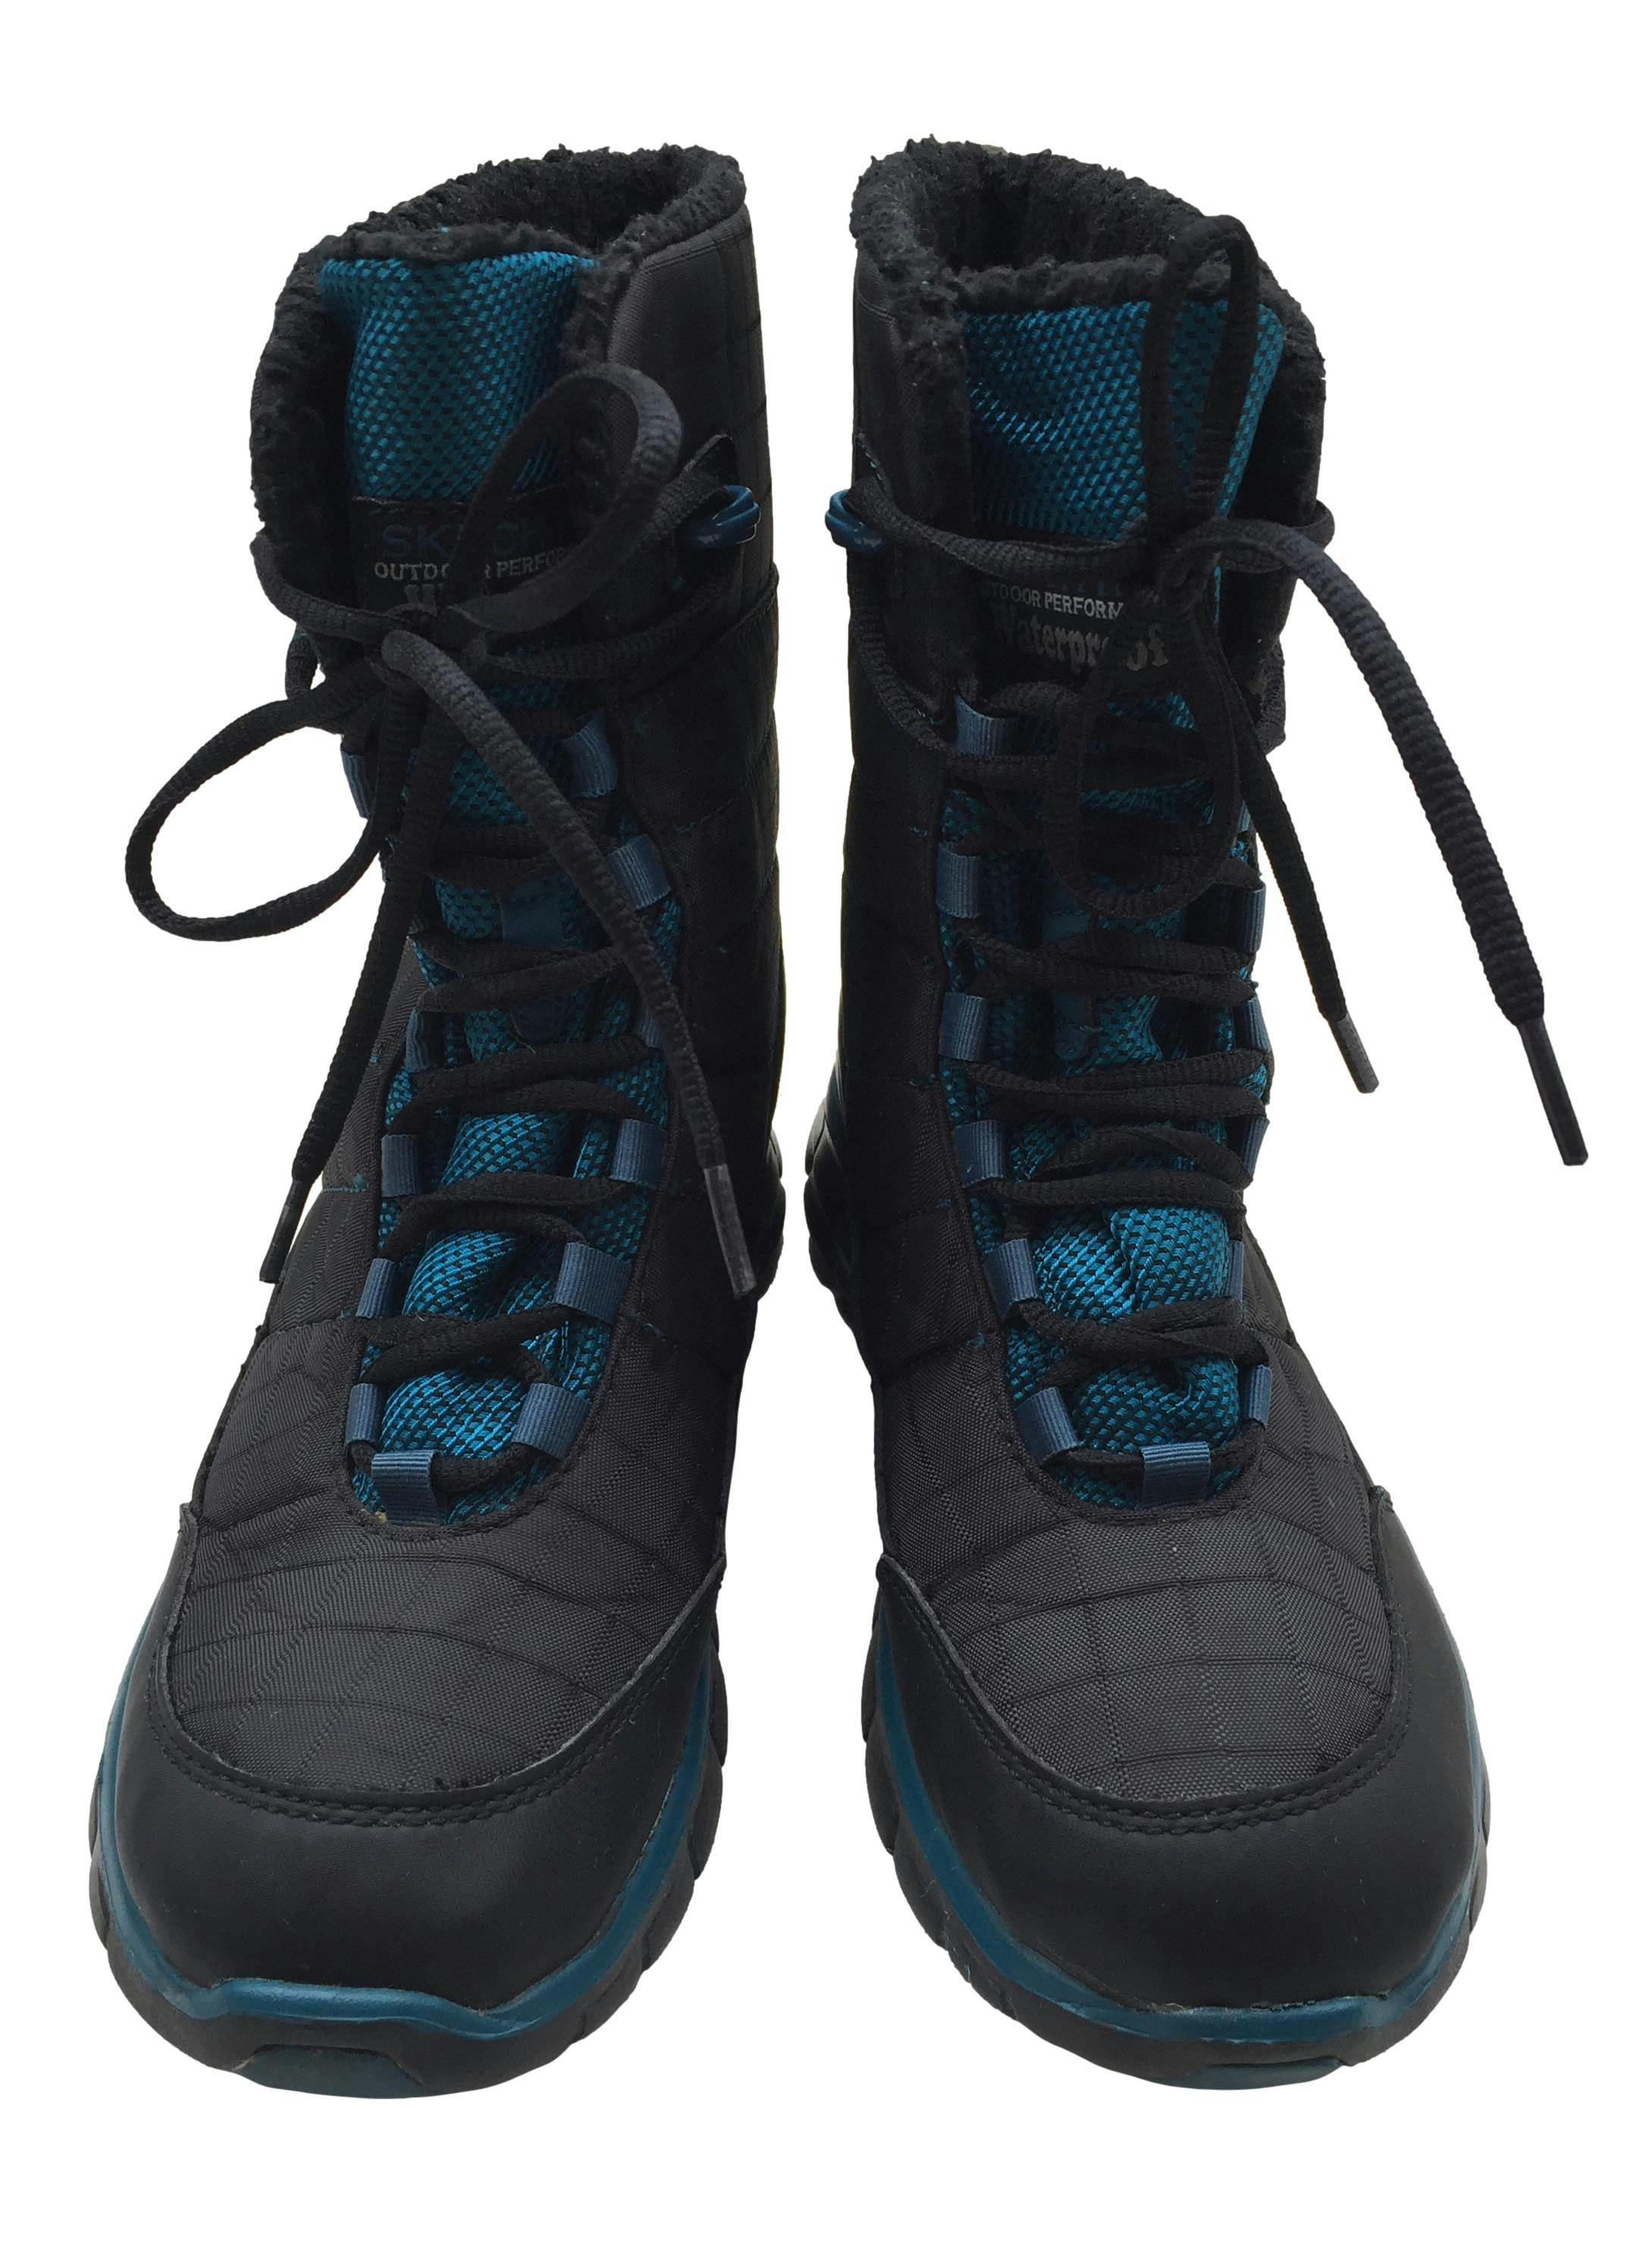 Botines Skechers Waterproof negras con detalles azules, pasadores delanteros, caña 17cm. Estado 8.5/10